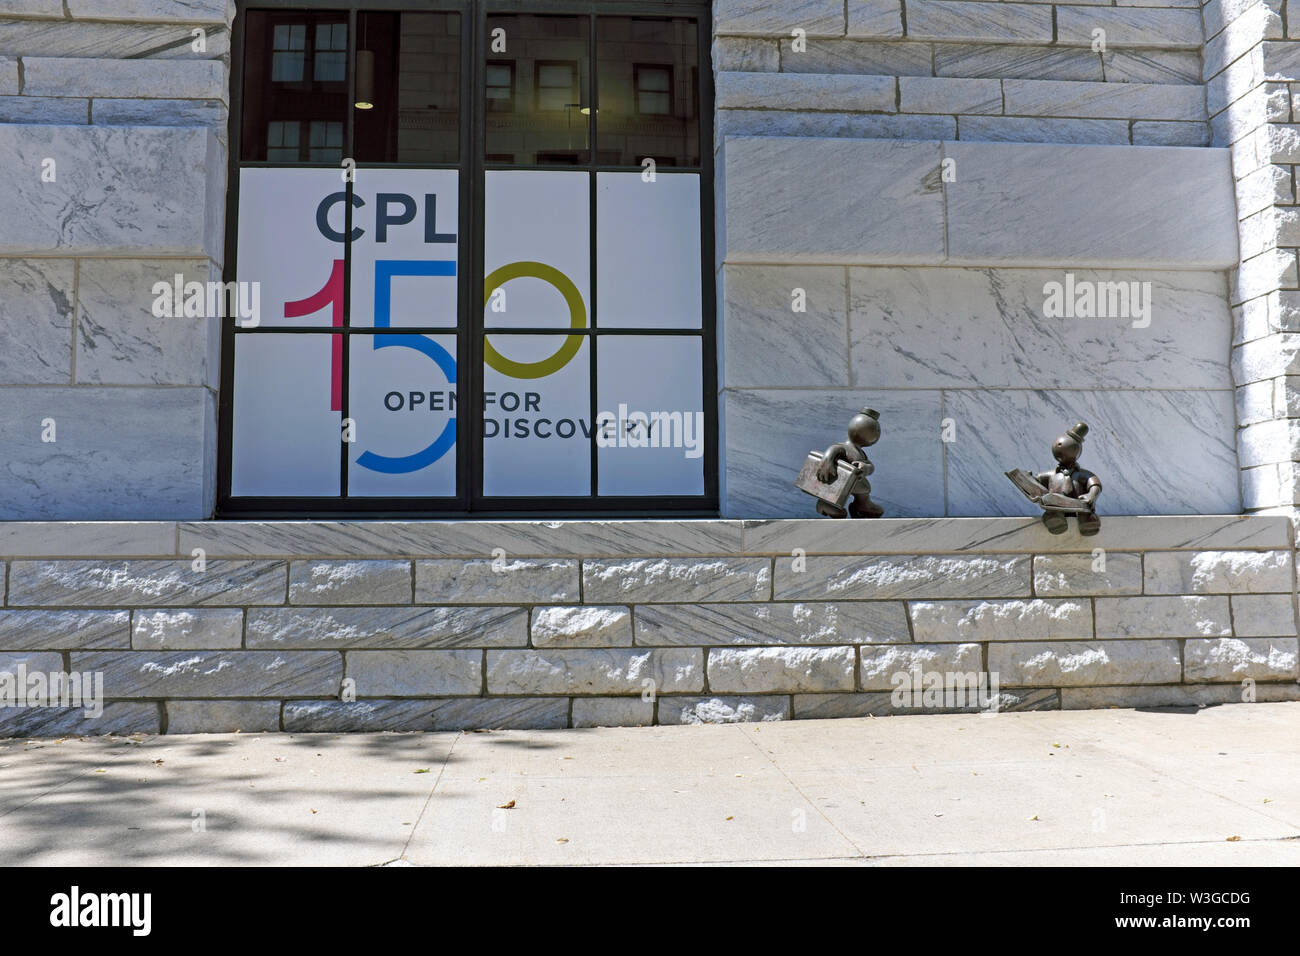 Una finestra esterna del Cleveland Public Library su Superior Avenue nel centro di Cleveland, Ohio, USA promuove il suo centocinquantesimo anniversario. Foto Stock